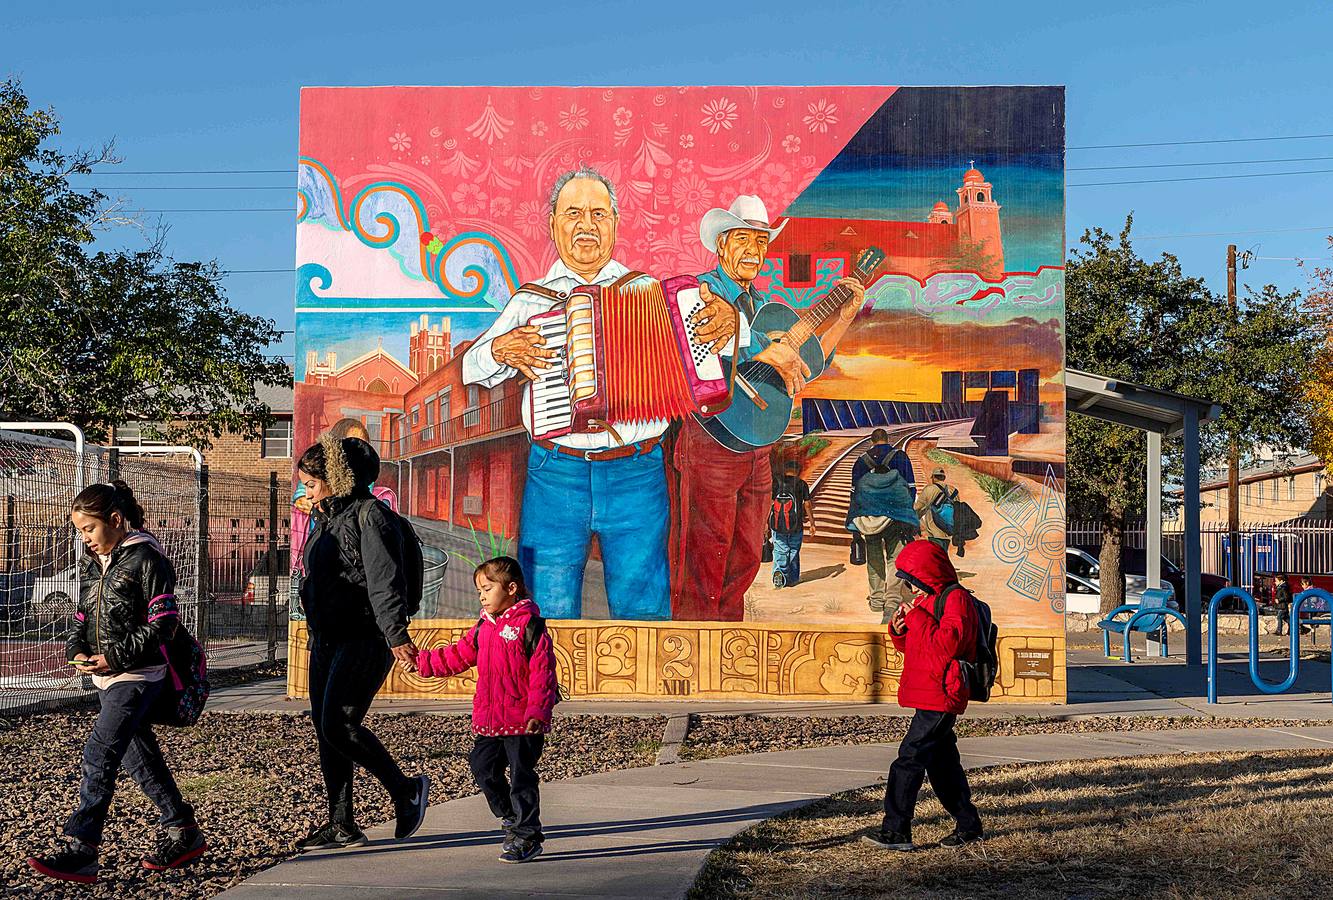 Más de 100 murales dispersos por la ciudad de El Paso, en Texas, representan la cultura y el orgullo comunitario y latinoamericano de la región. La mayor concentración de estas creaciones de arte público, algunas de las cuales tienen más de 80 años, están ubicadas en los distritos de Lincoln Park y El Segundo Barrio. Artistas como Jesús Alvarado y Martín Zubía (en las fotos) trabajan estos días en la creación de nuevas pinturas.